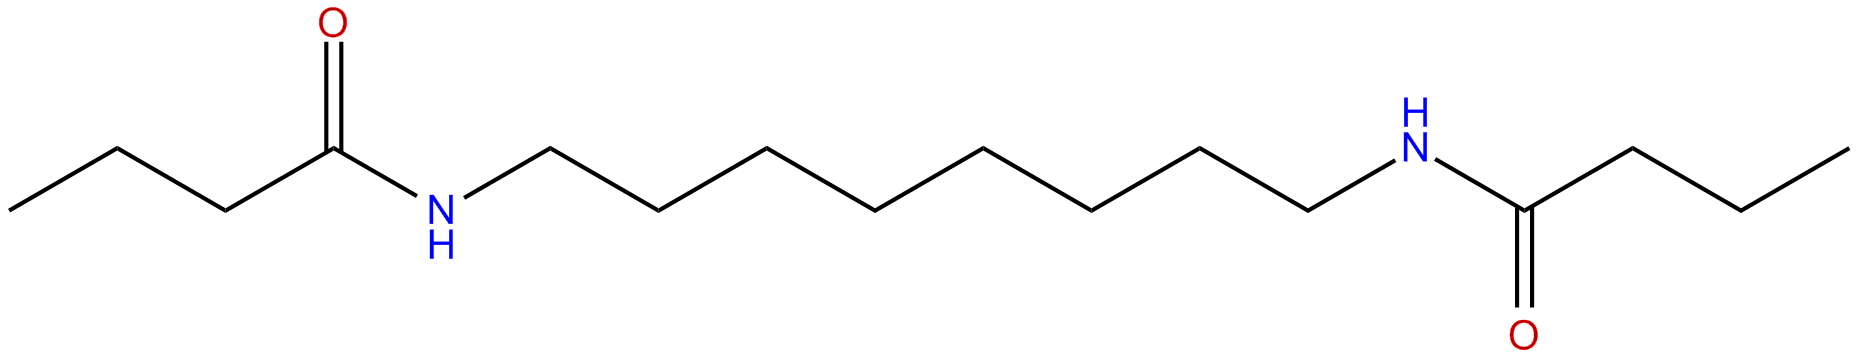 Image of N,N'-1,8-octanediylbisbutanamide